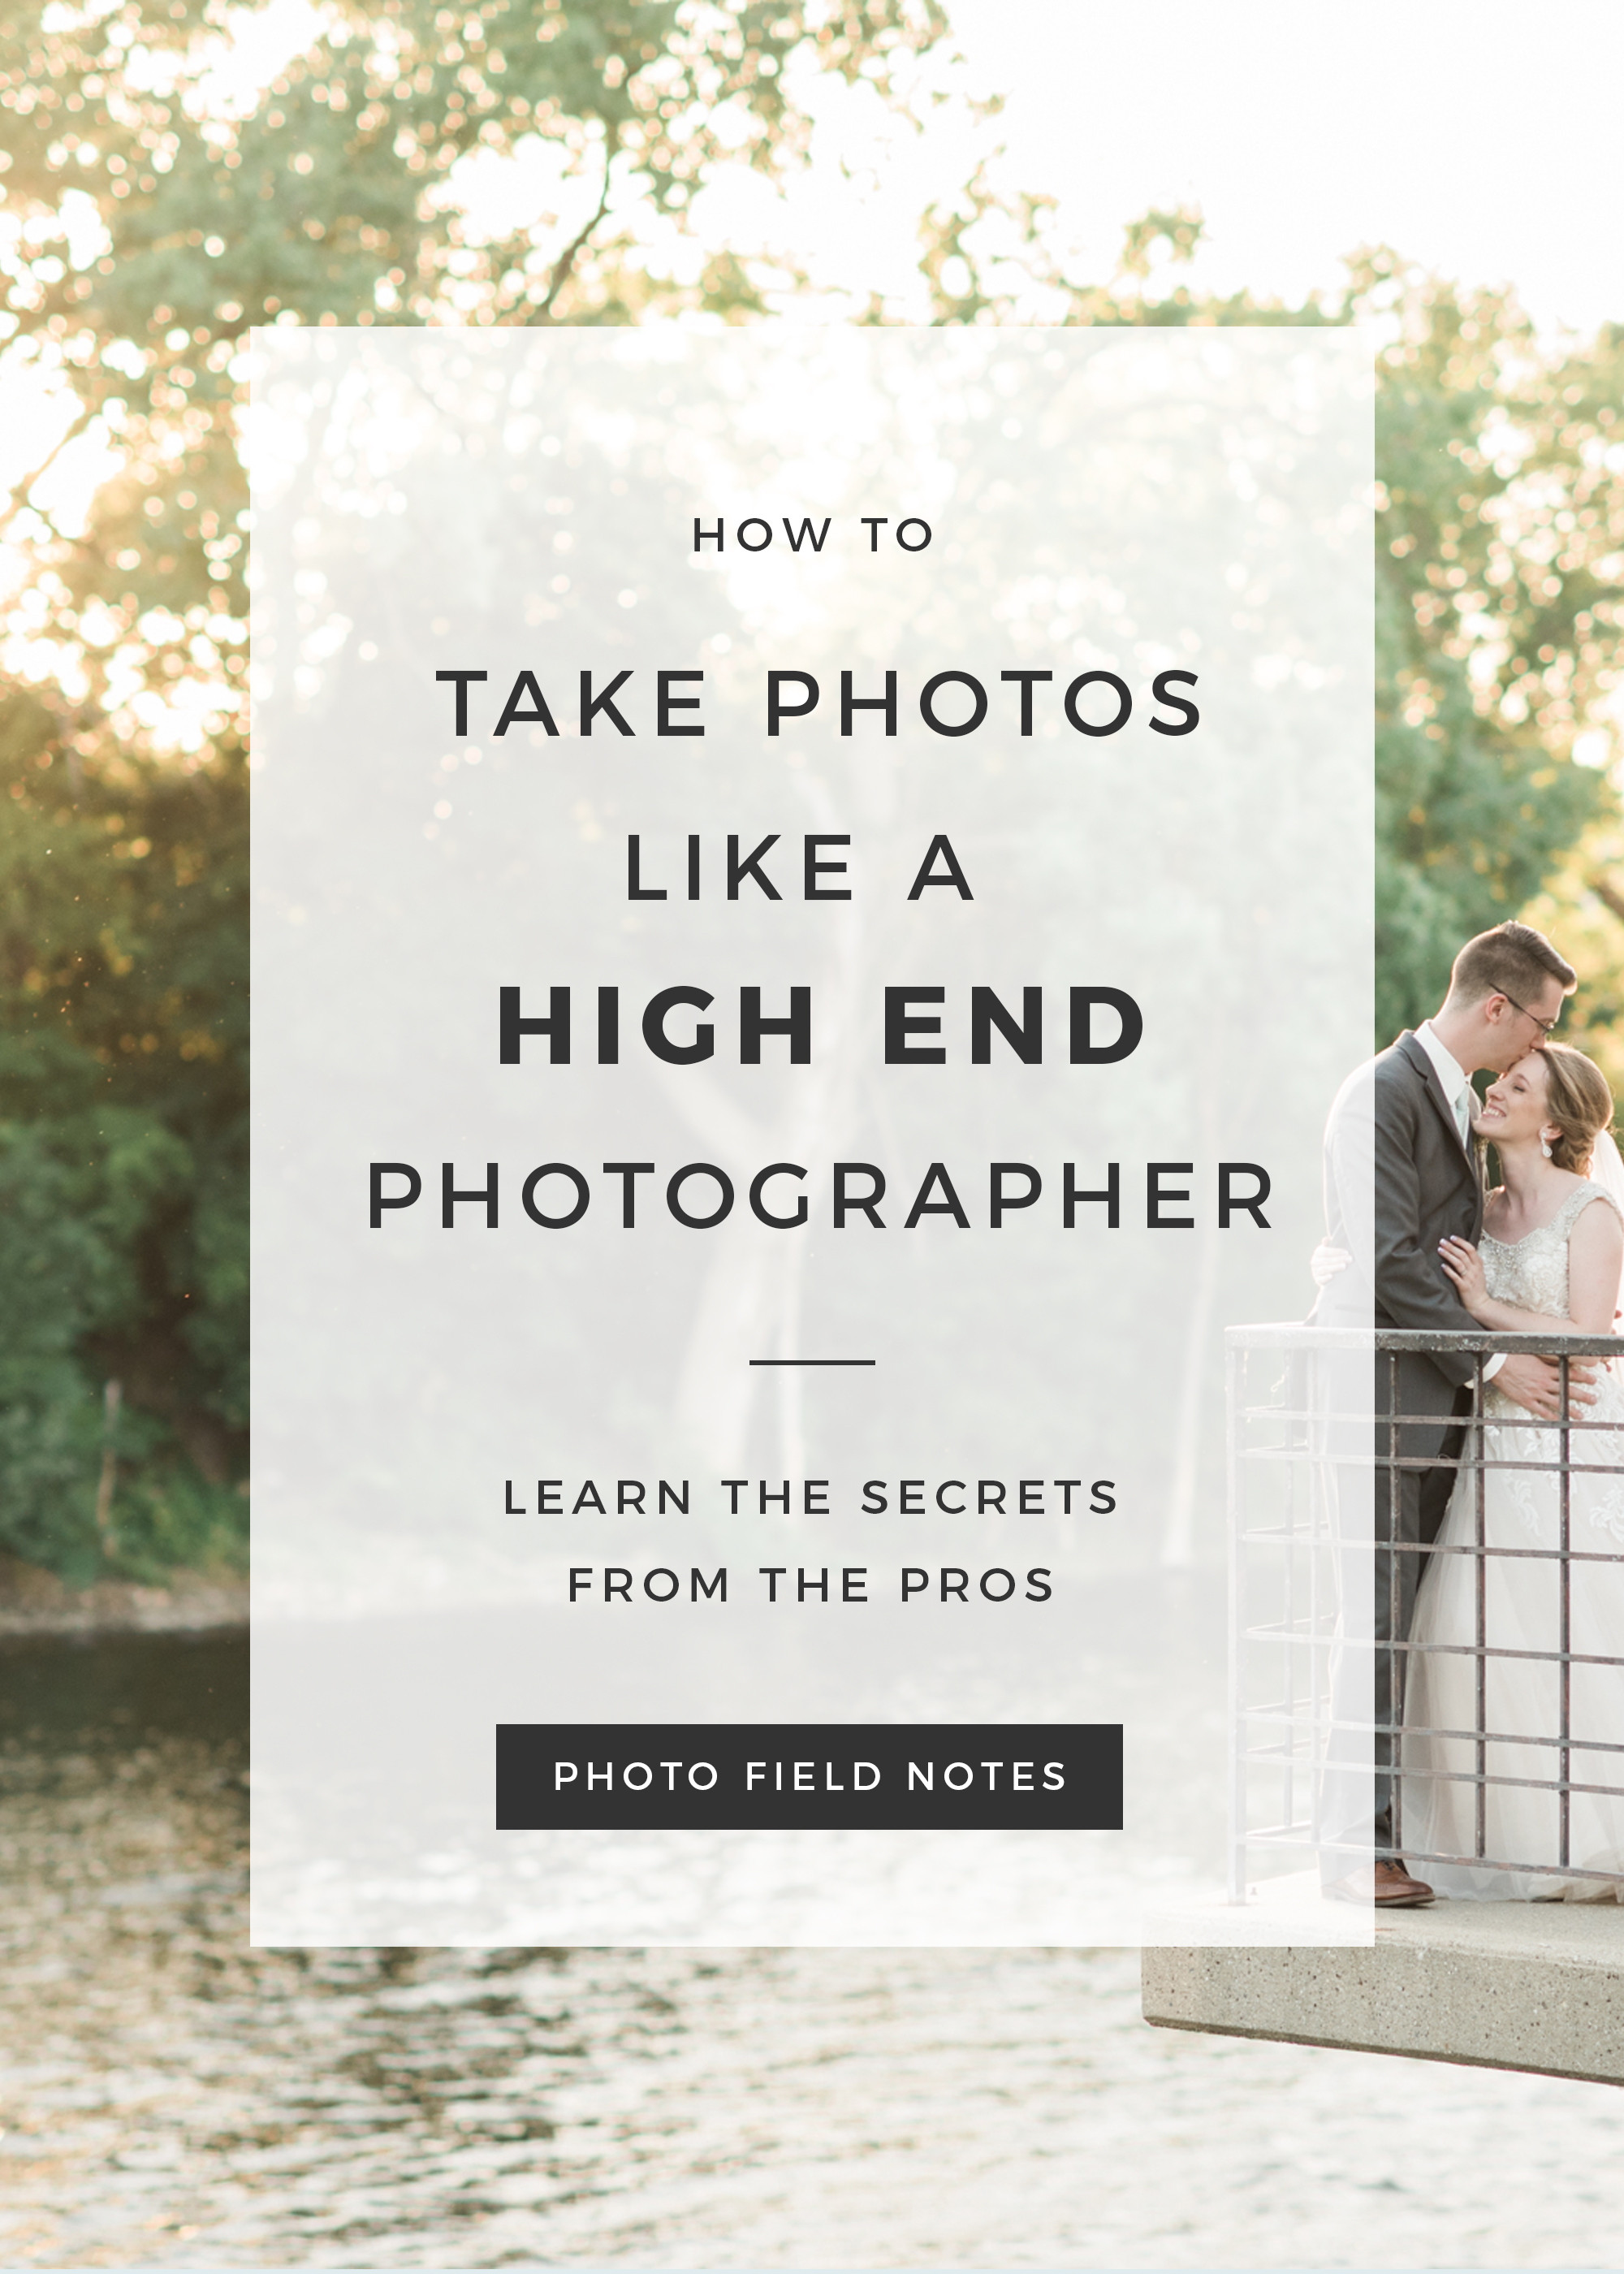 How to take photos like a pro - Shoot like a high end photographer